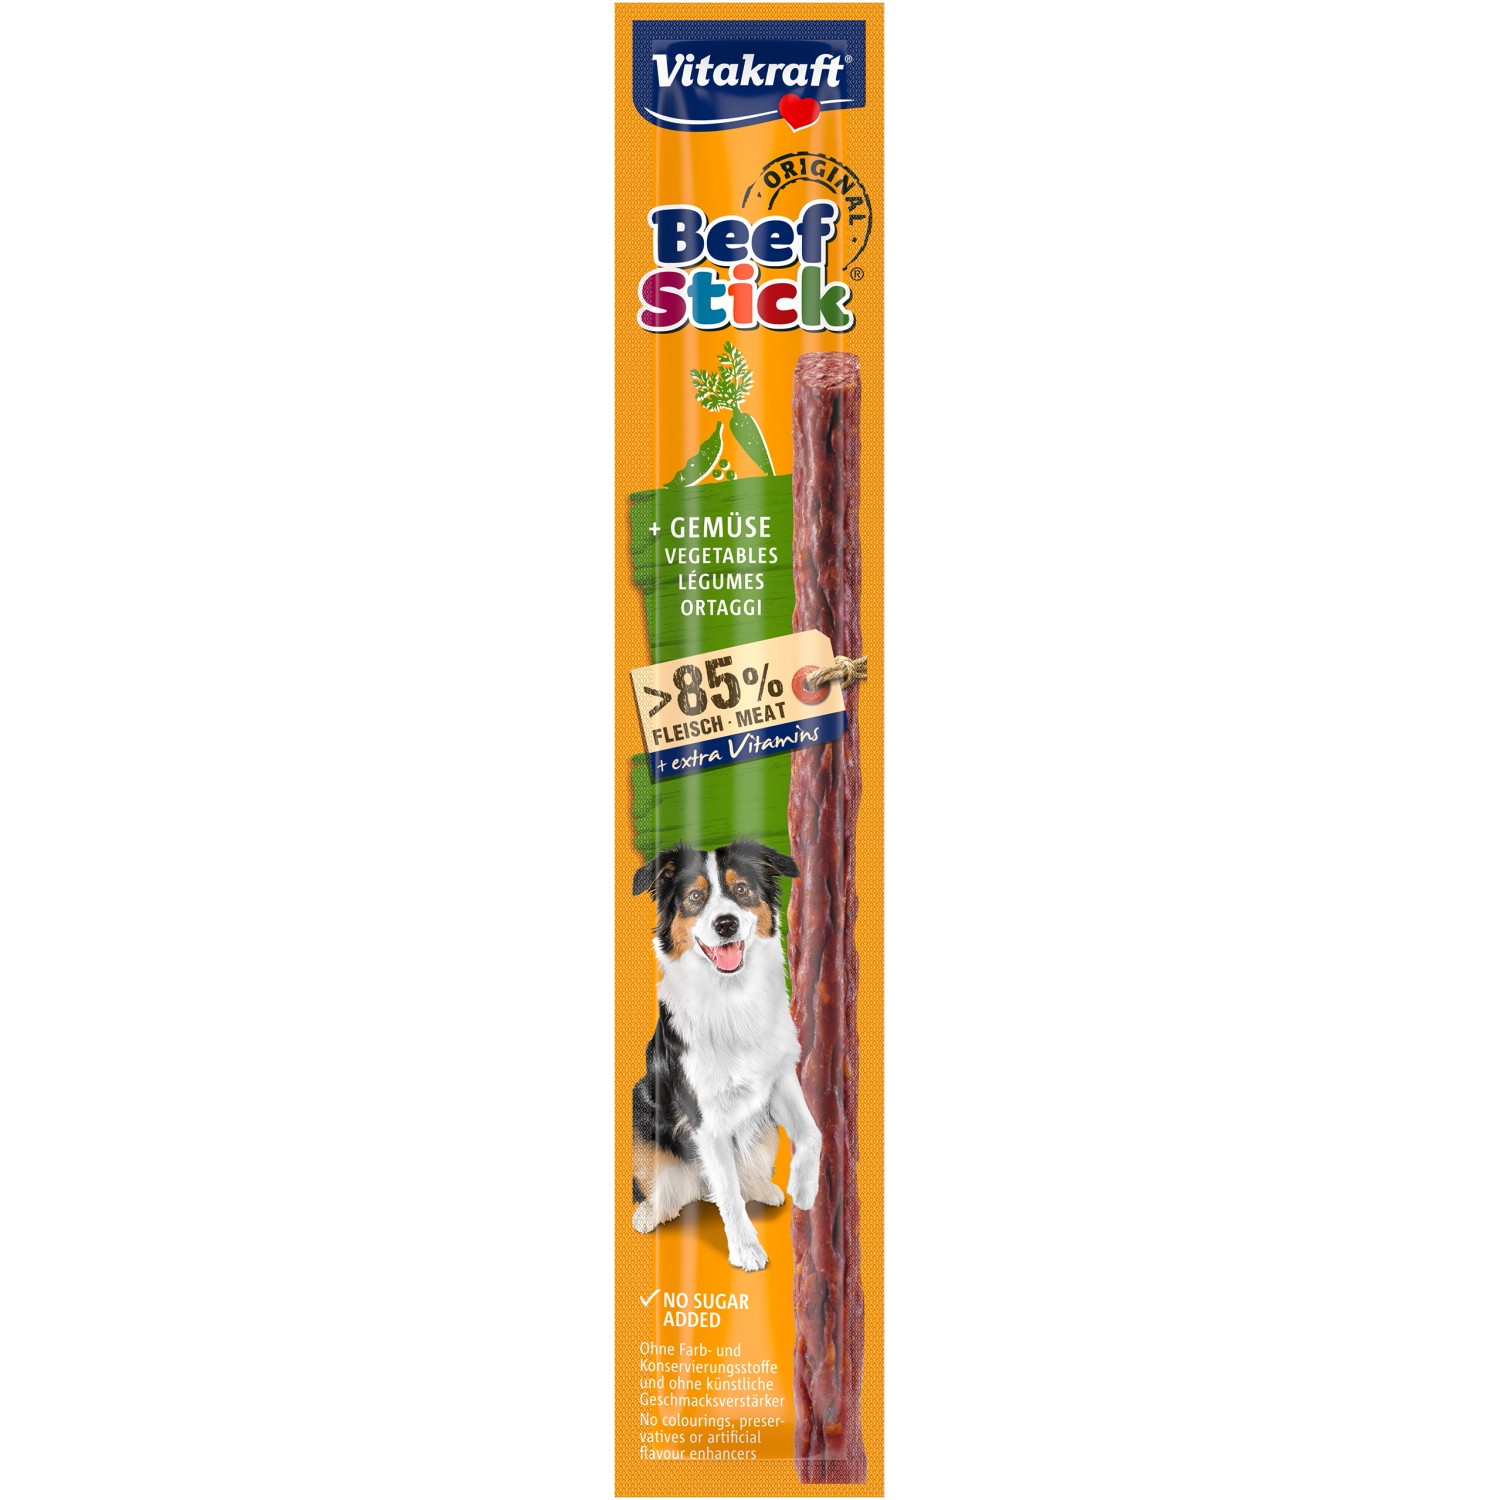 Vitakraft Beef Stick® Gemüse für Hund 1 Stück